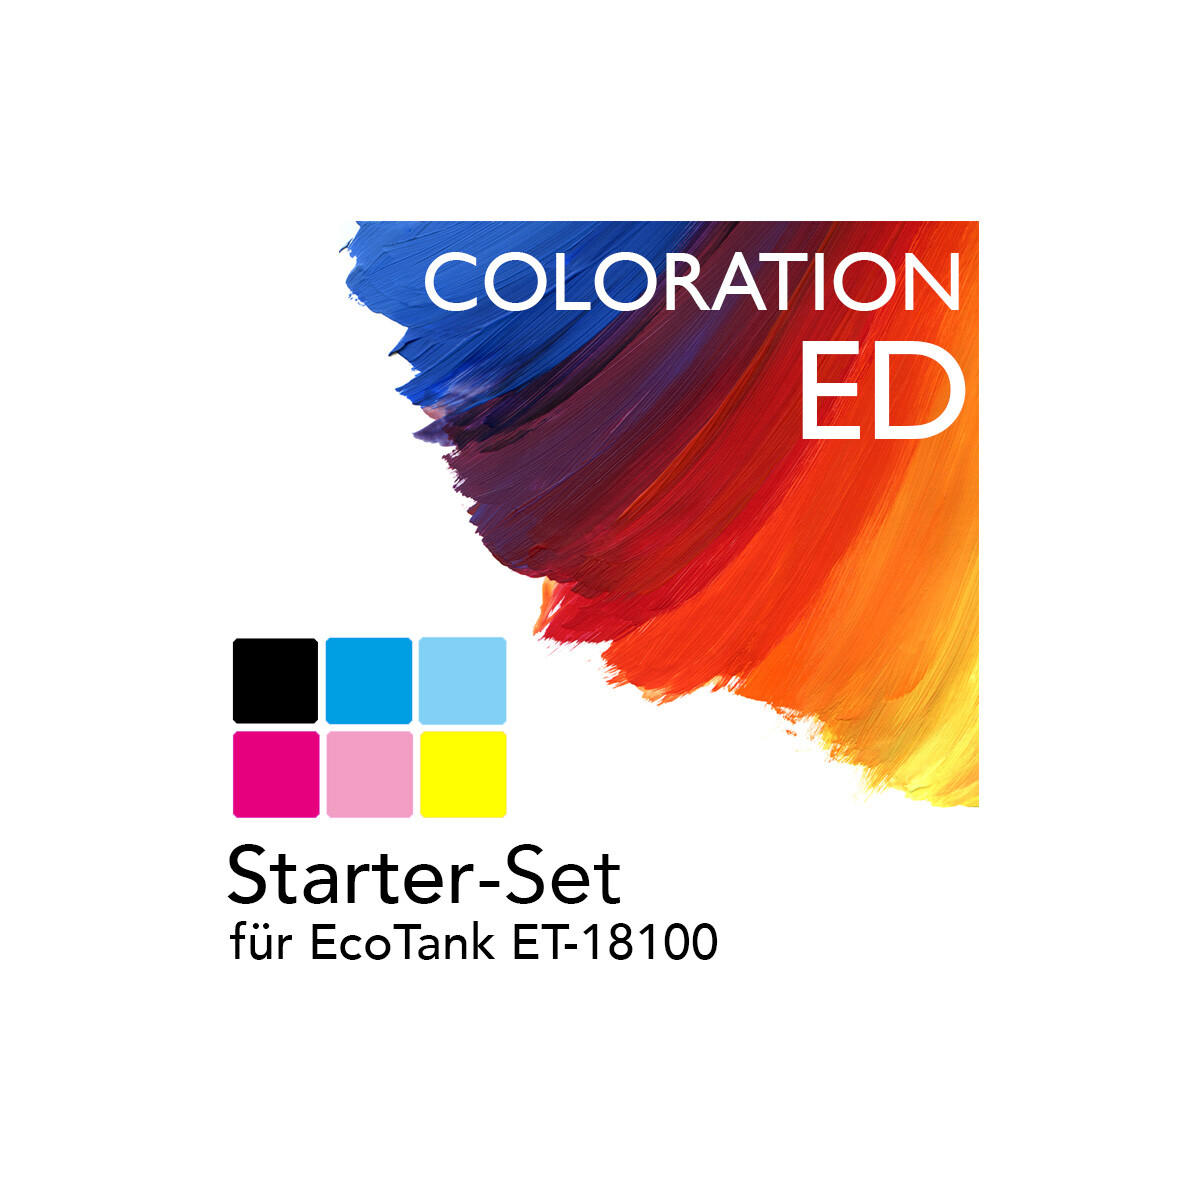 Starter-Set Coloration ED EcoTank ET-18100